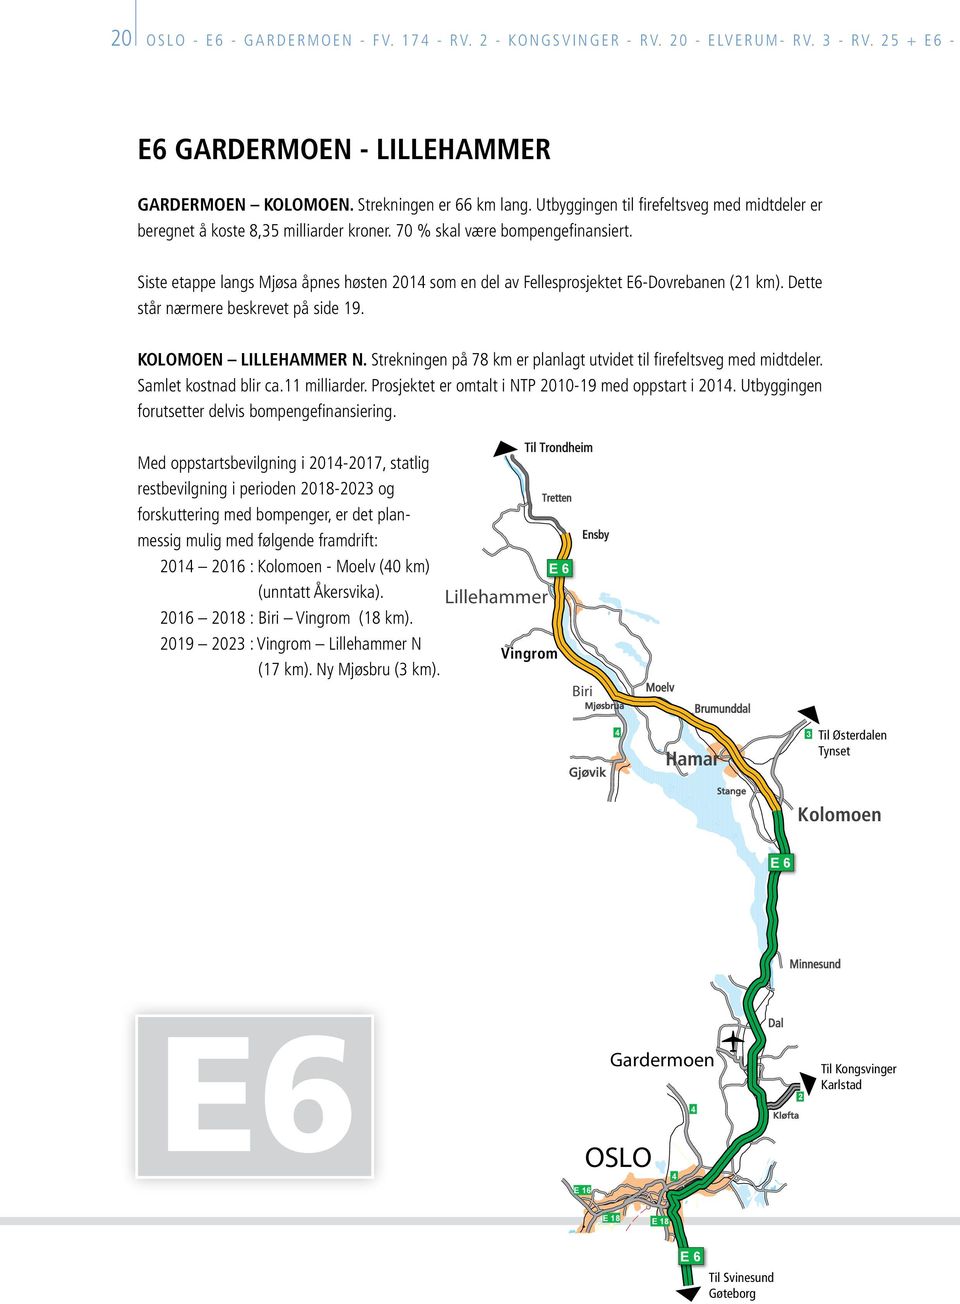 Siste etappe langs Mjøsa åpnes høsten 2014 som en del av Fellesprosjektet E6-Dovrebanen (21 km). Dette står nærmere beskrevet på side 19. KOLOMOEN LILLEHAMMER N.